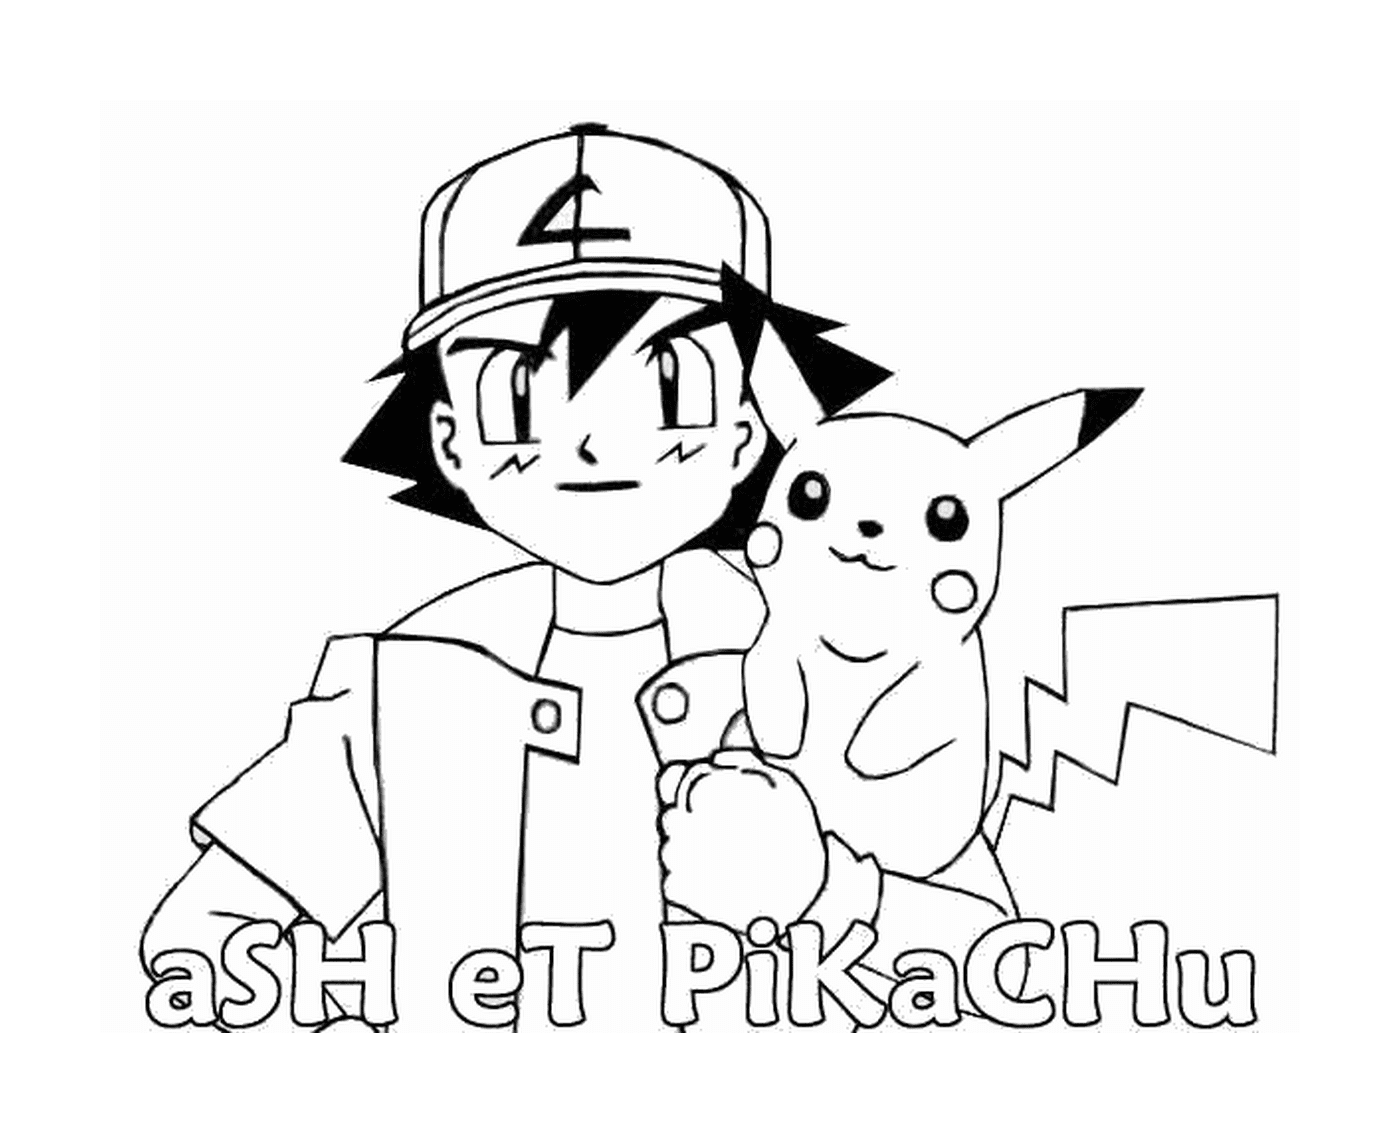  Ash segurando Pikachu 